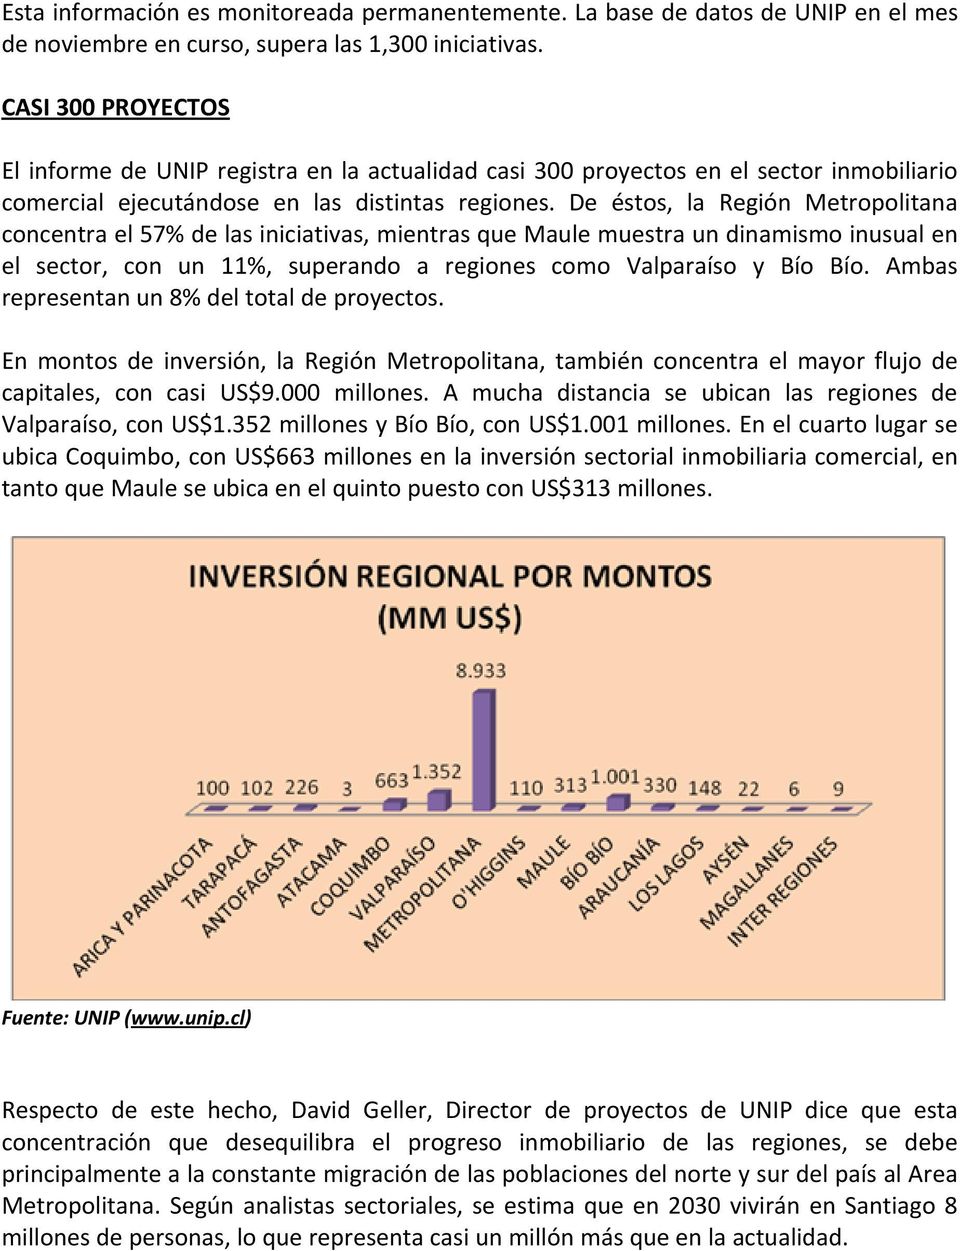 De éstos, la Región Metropolitana concentra el 57% de las iniciativas, mientras que Maule muestra un dinamismo inusual en el sector, con un 11%, superando a regiones como Valparaíso y Bío Bío.